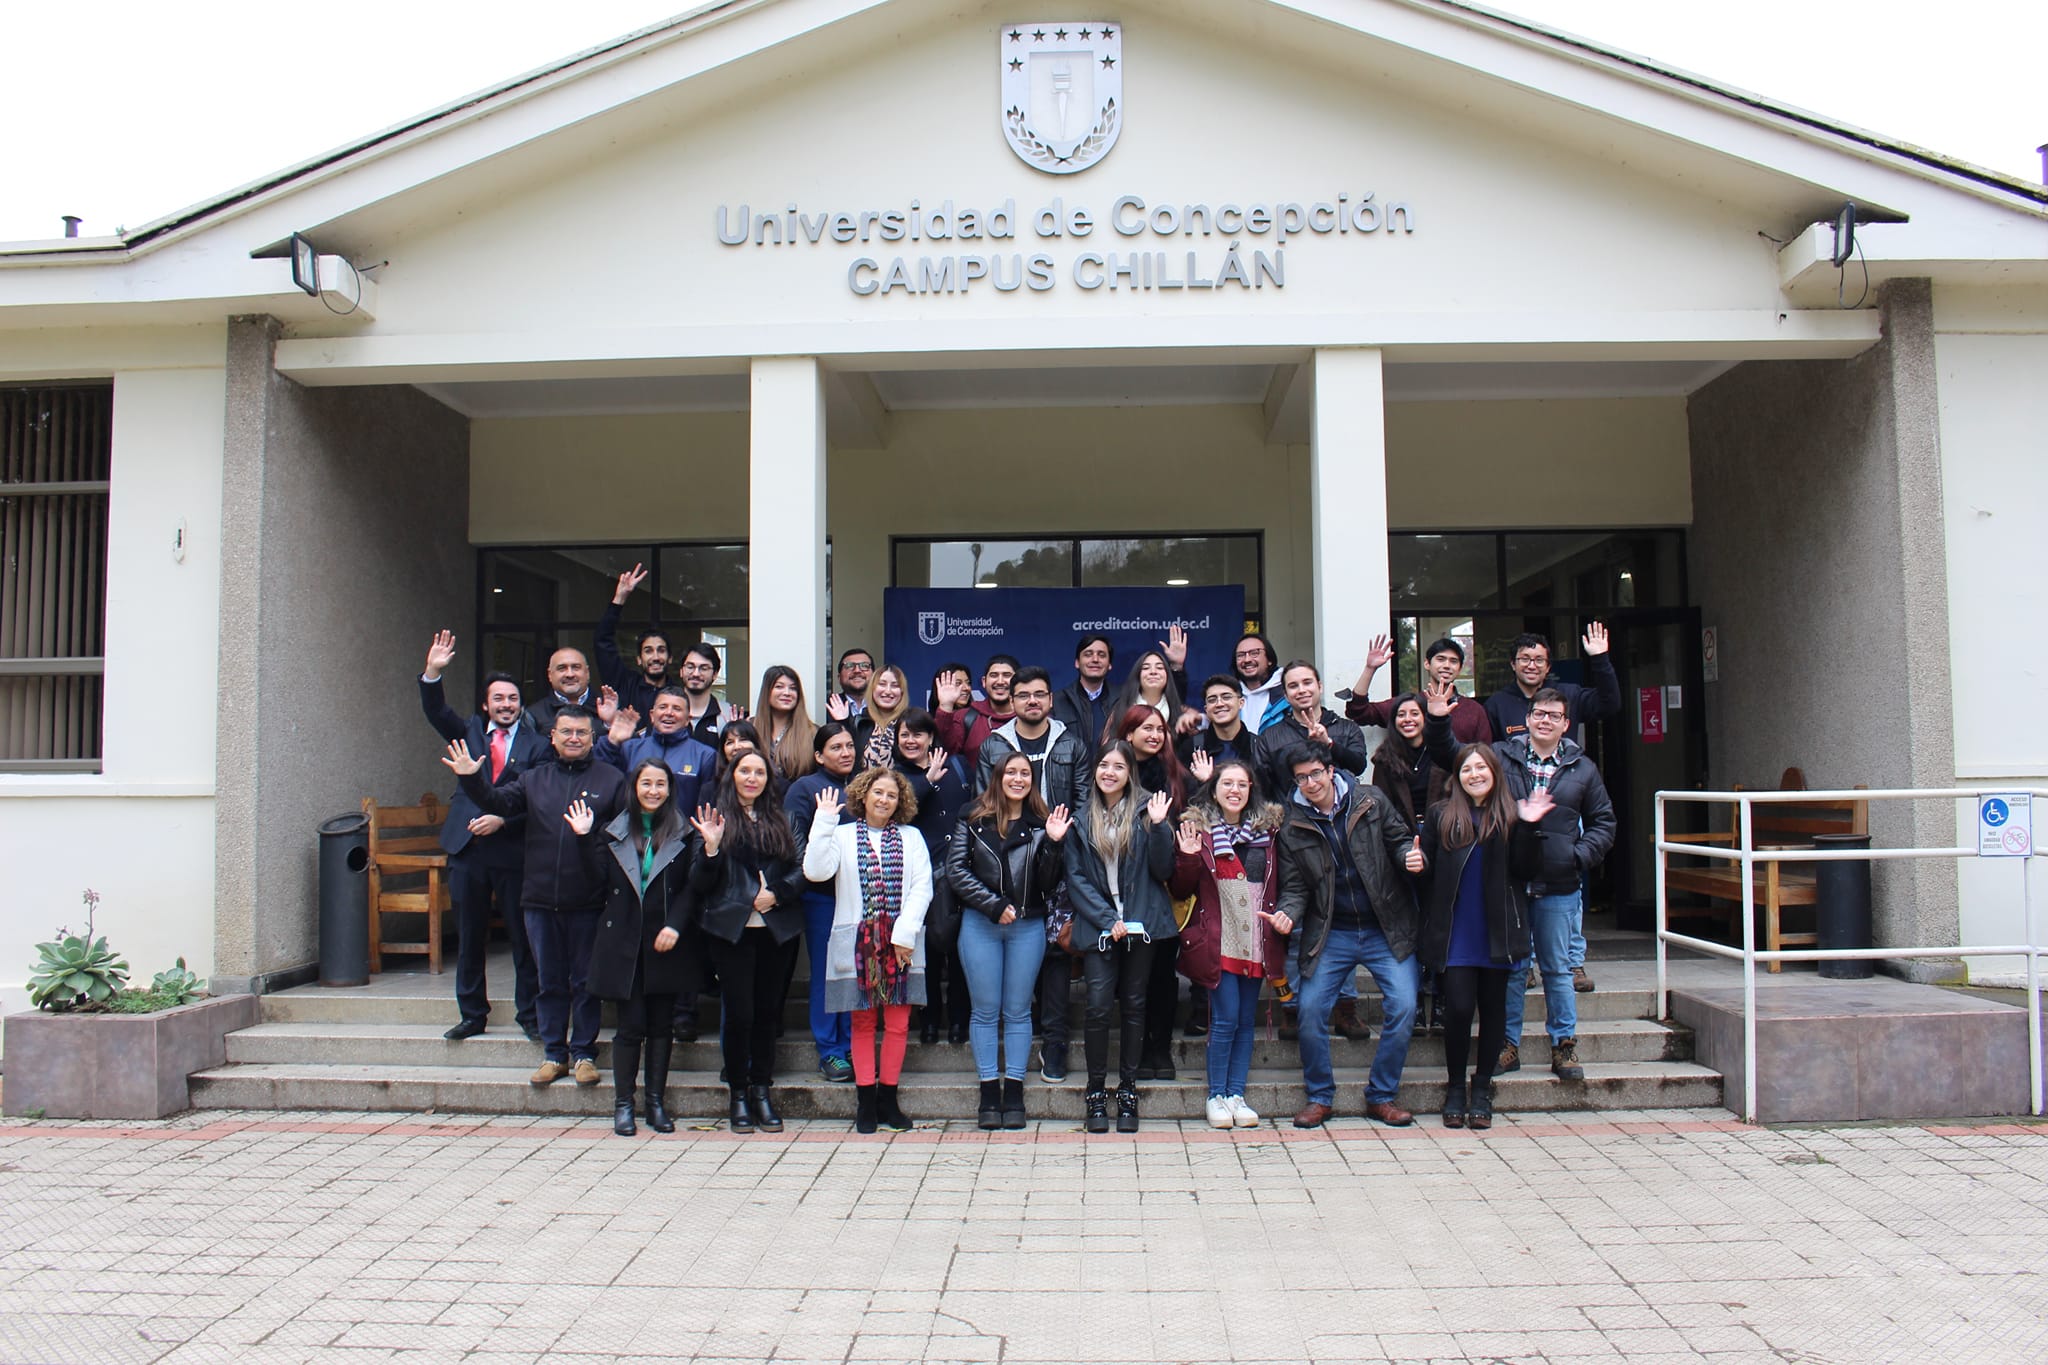 Campus de Los Ángeles, Chillán y Concepción se hicieron parte de las celebraciones de 10 años de CADE UdeC